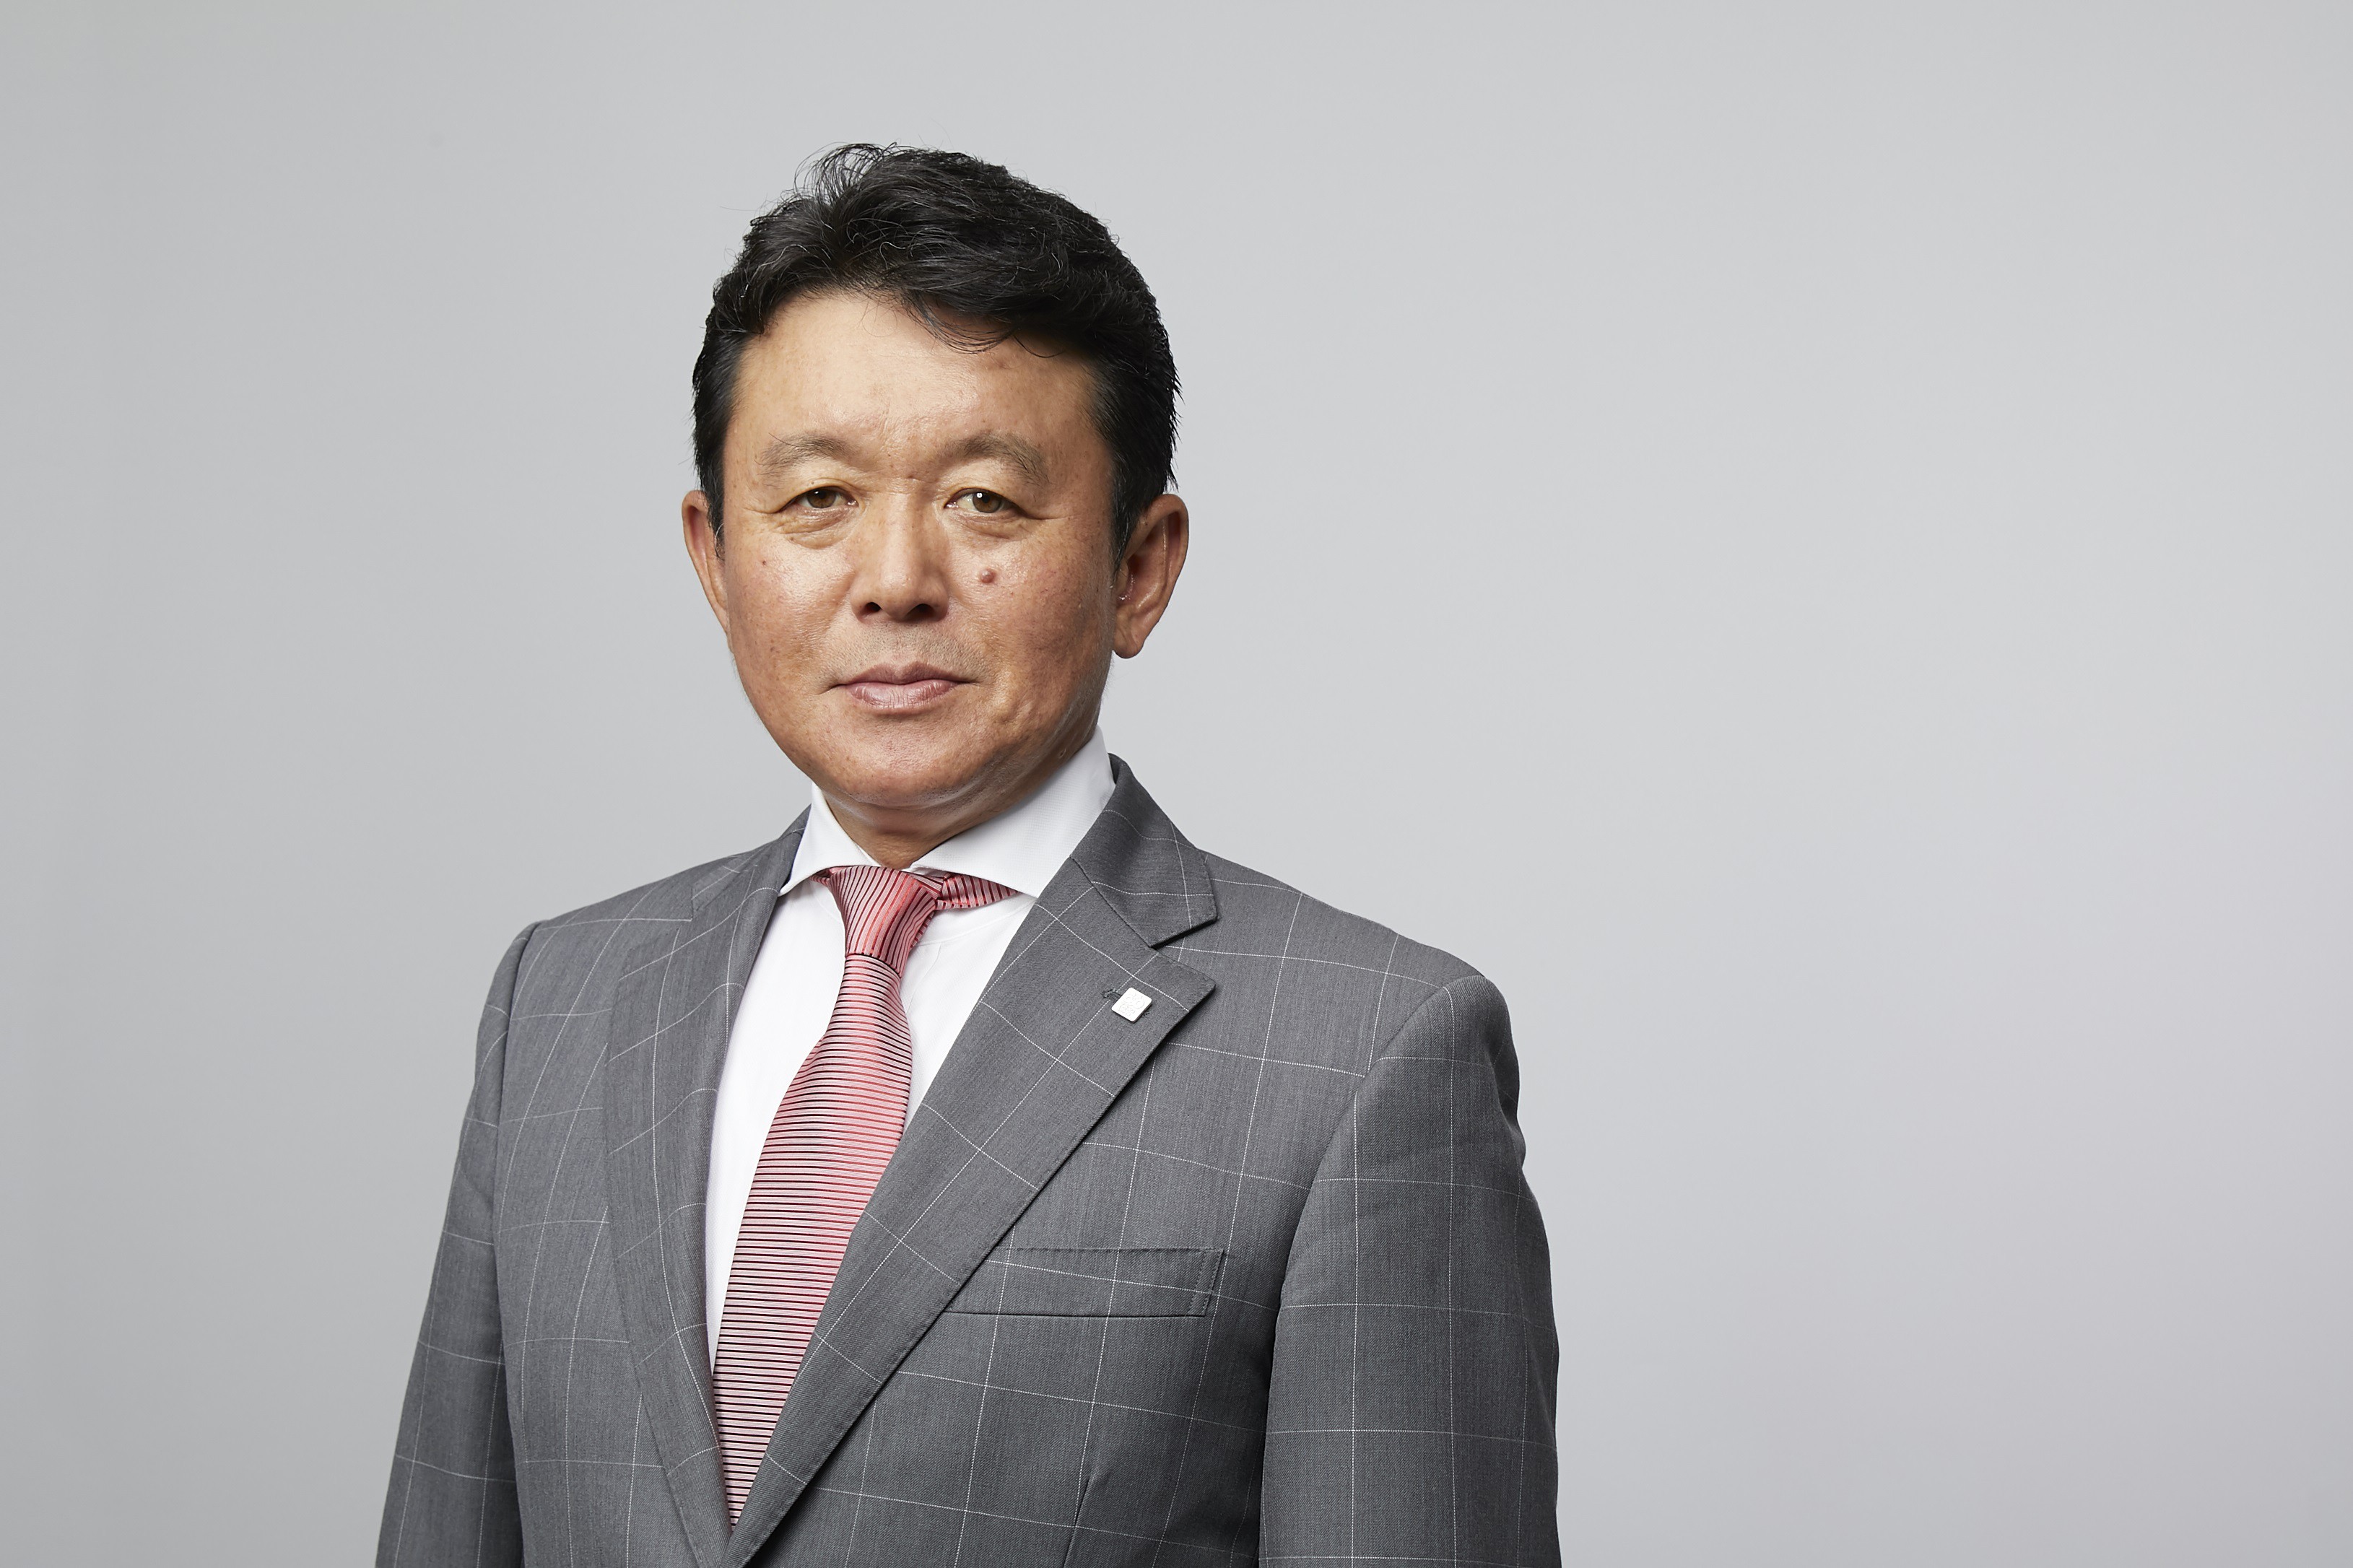 TKazuichi Shimada, president